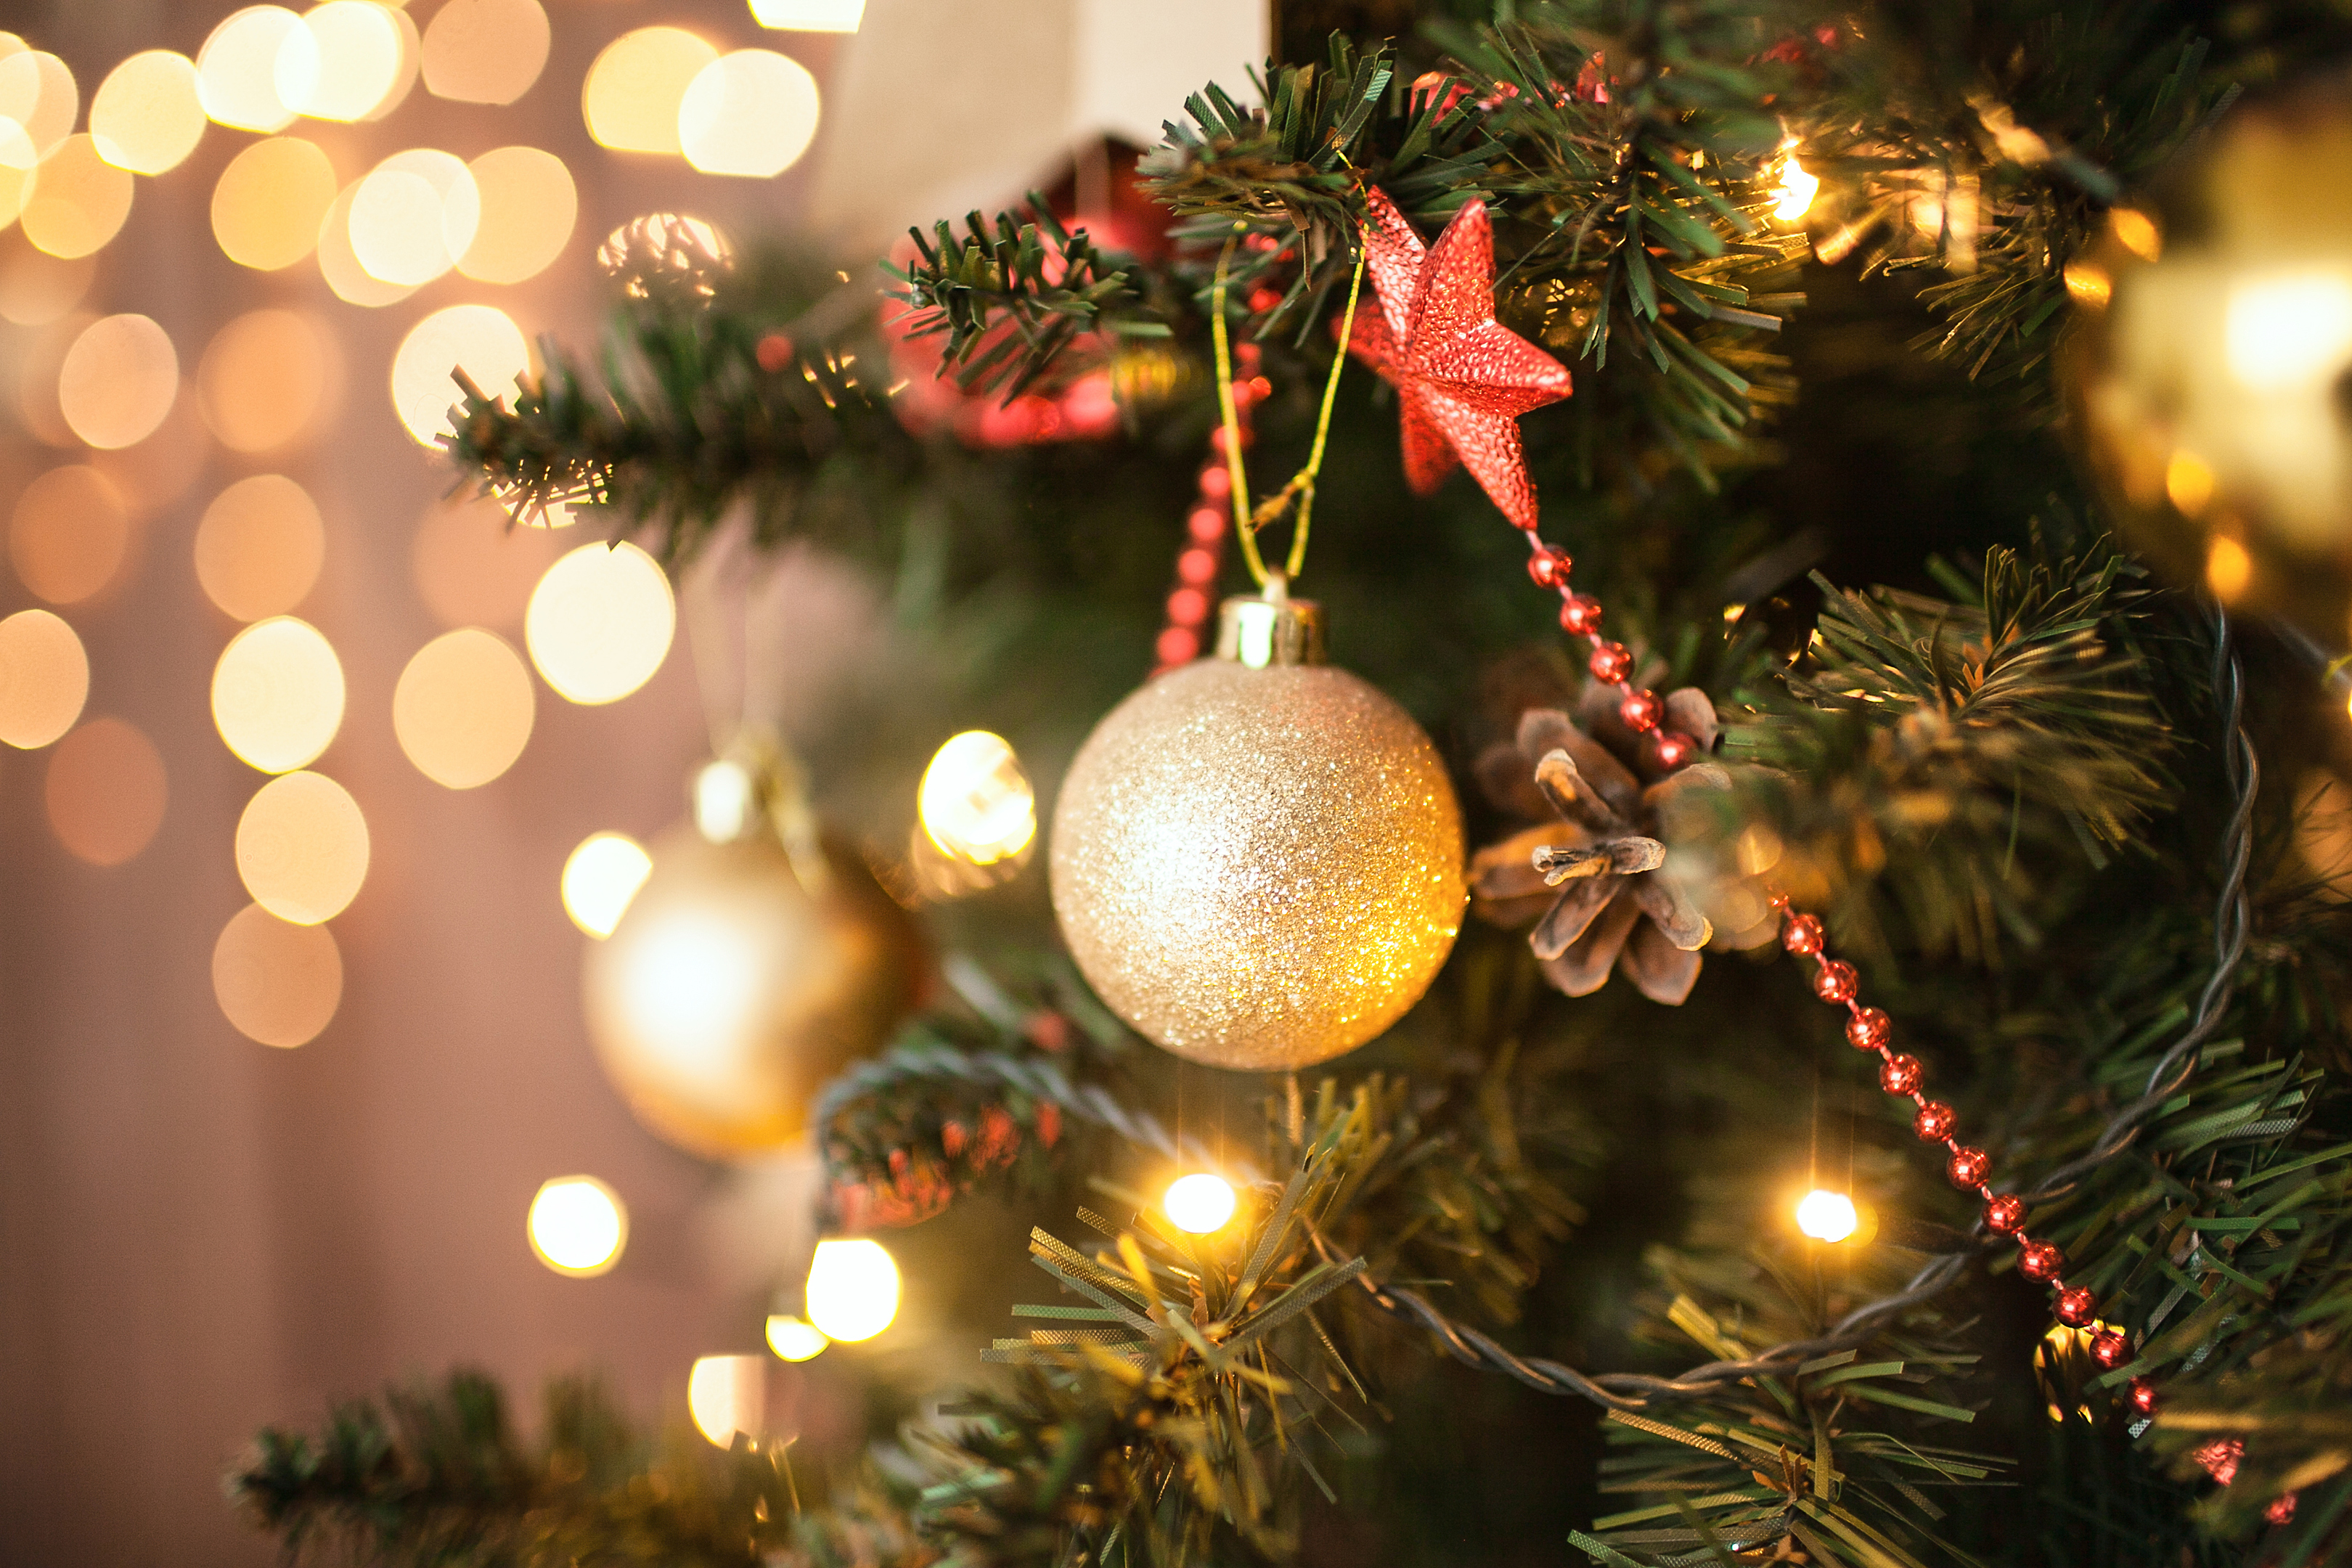 Christmas Trees: Do you buy real or fake? (iStock)